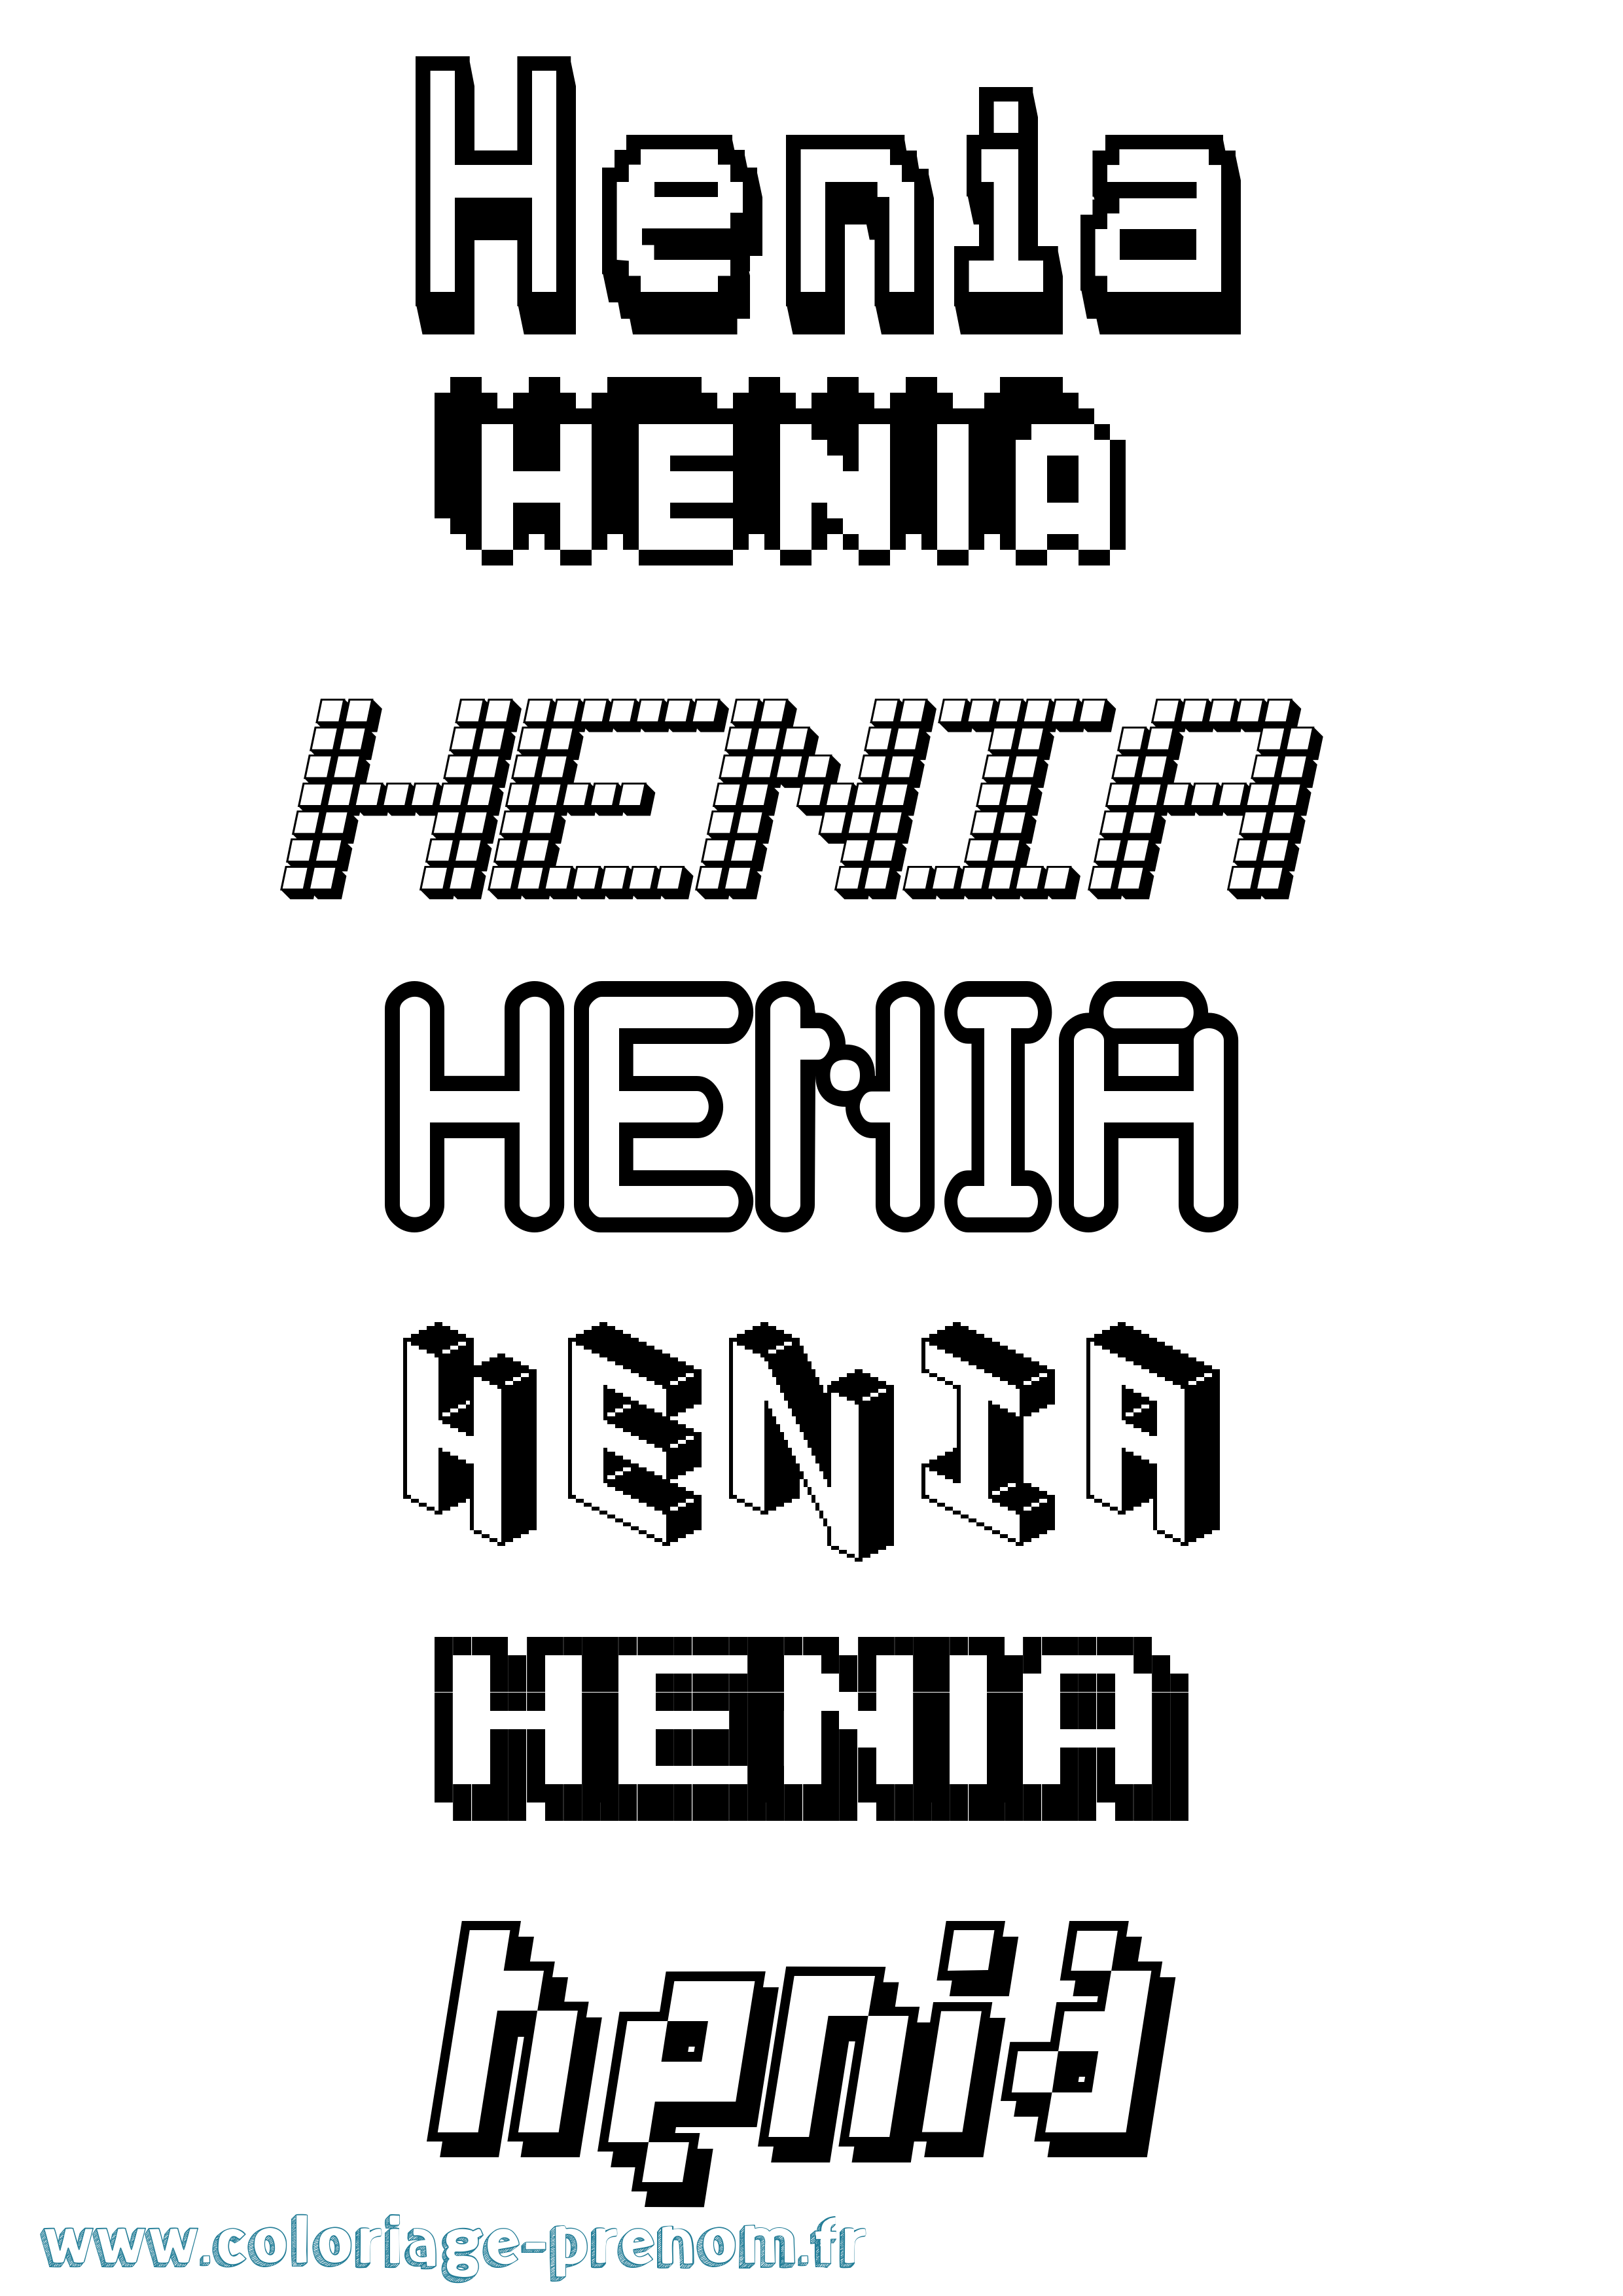 Coloriage prénom Henia Pixel